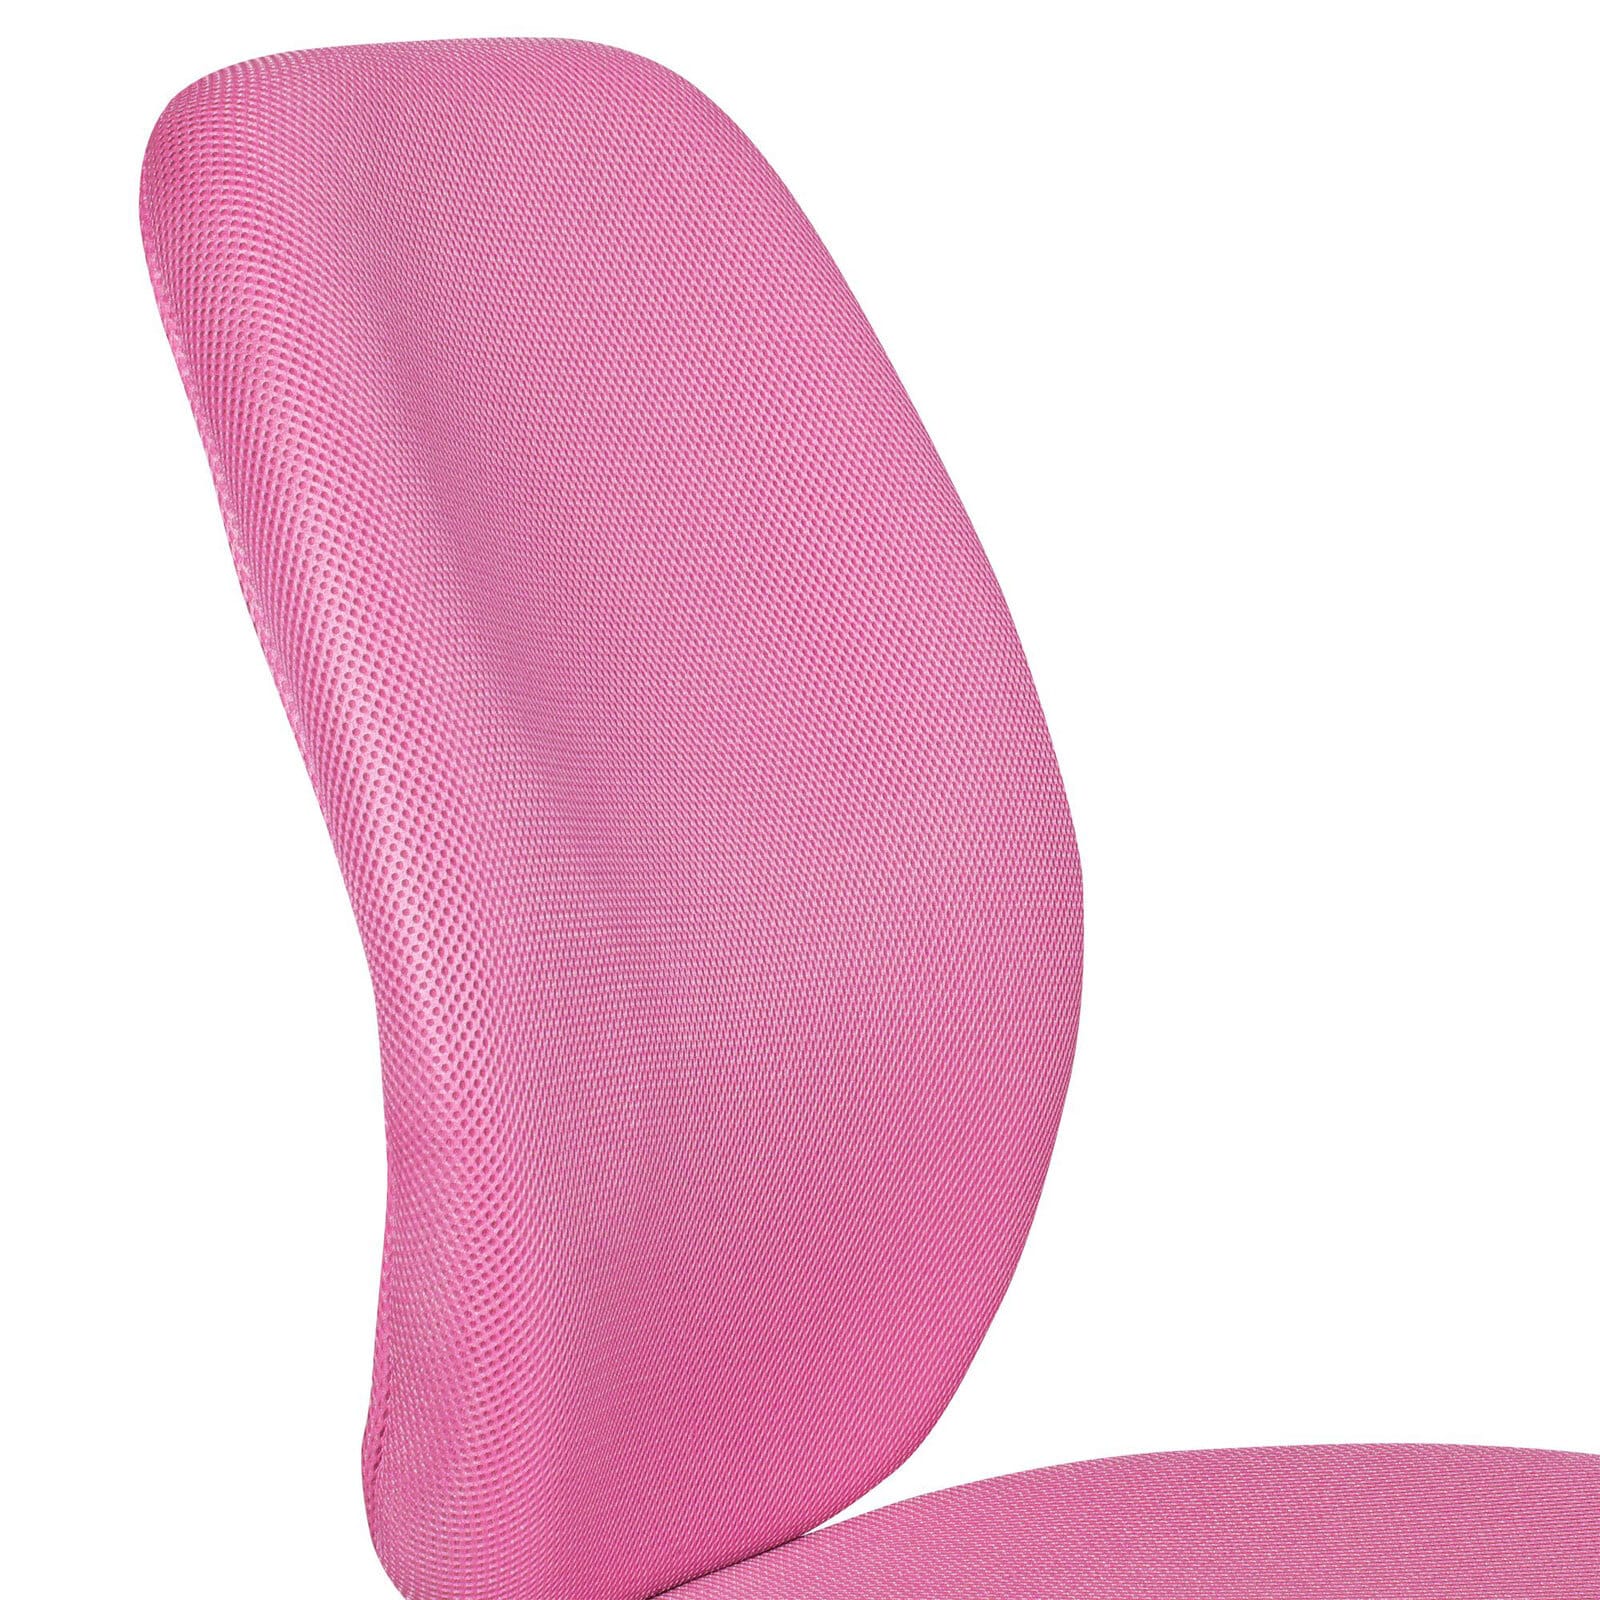 CASAVANTI Schreibtischstuhl Mesh Silberfarbig/ Pink